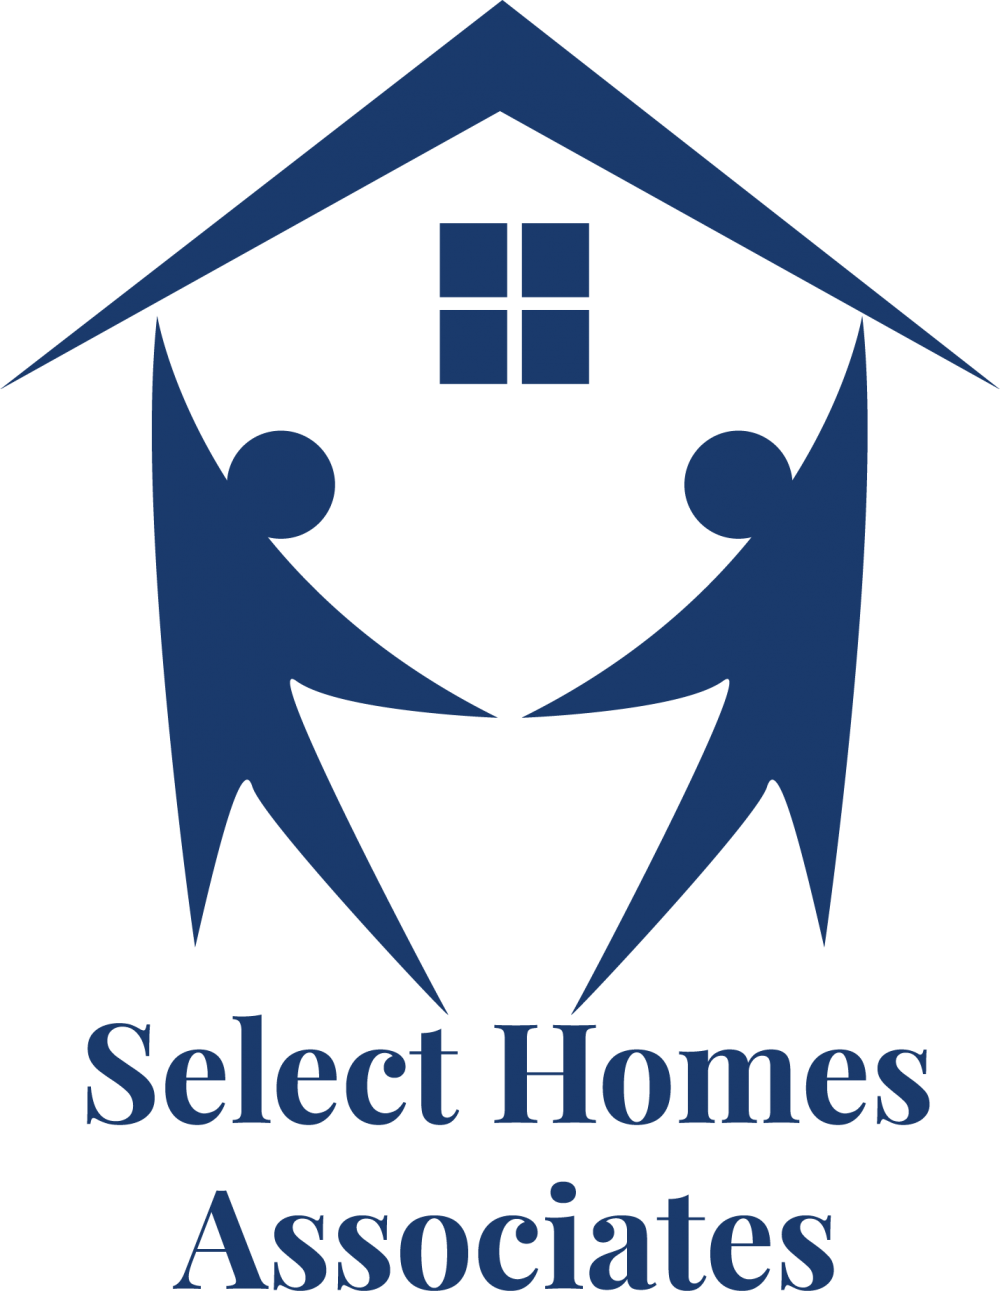 Select Homes Associates